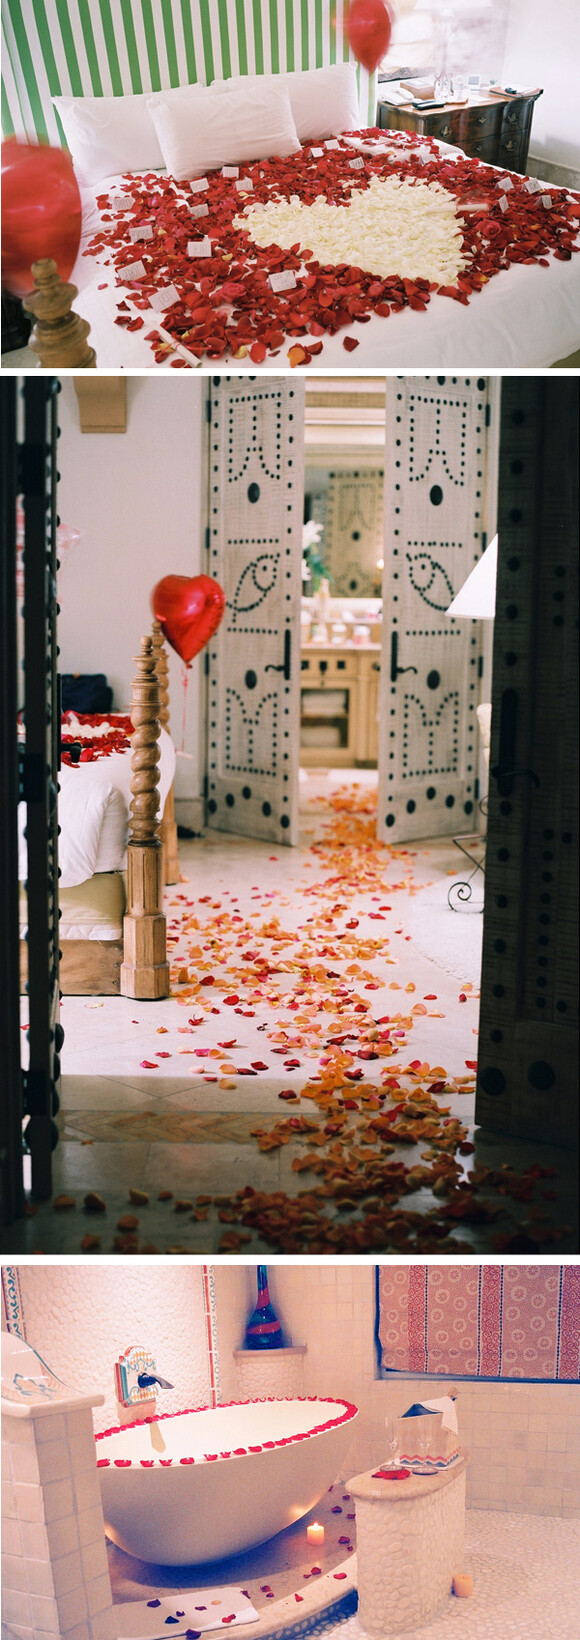 婚礼布置-浪漫婚房